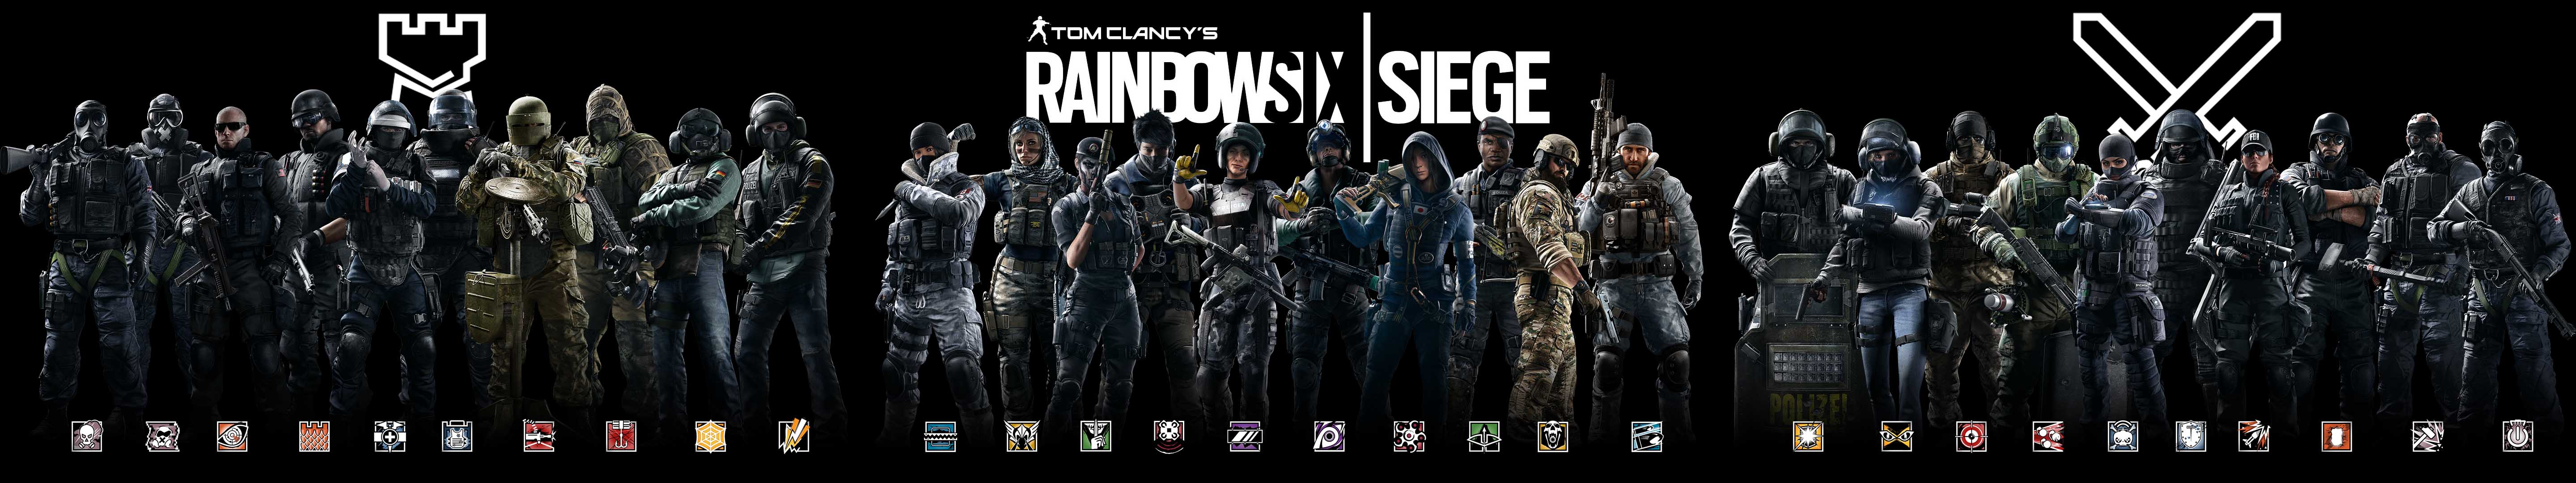 Tom Clancy's Rainbow Six: Siege Wallpaper Free Tom Clancy's